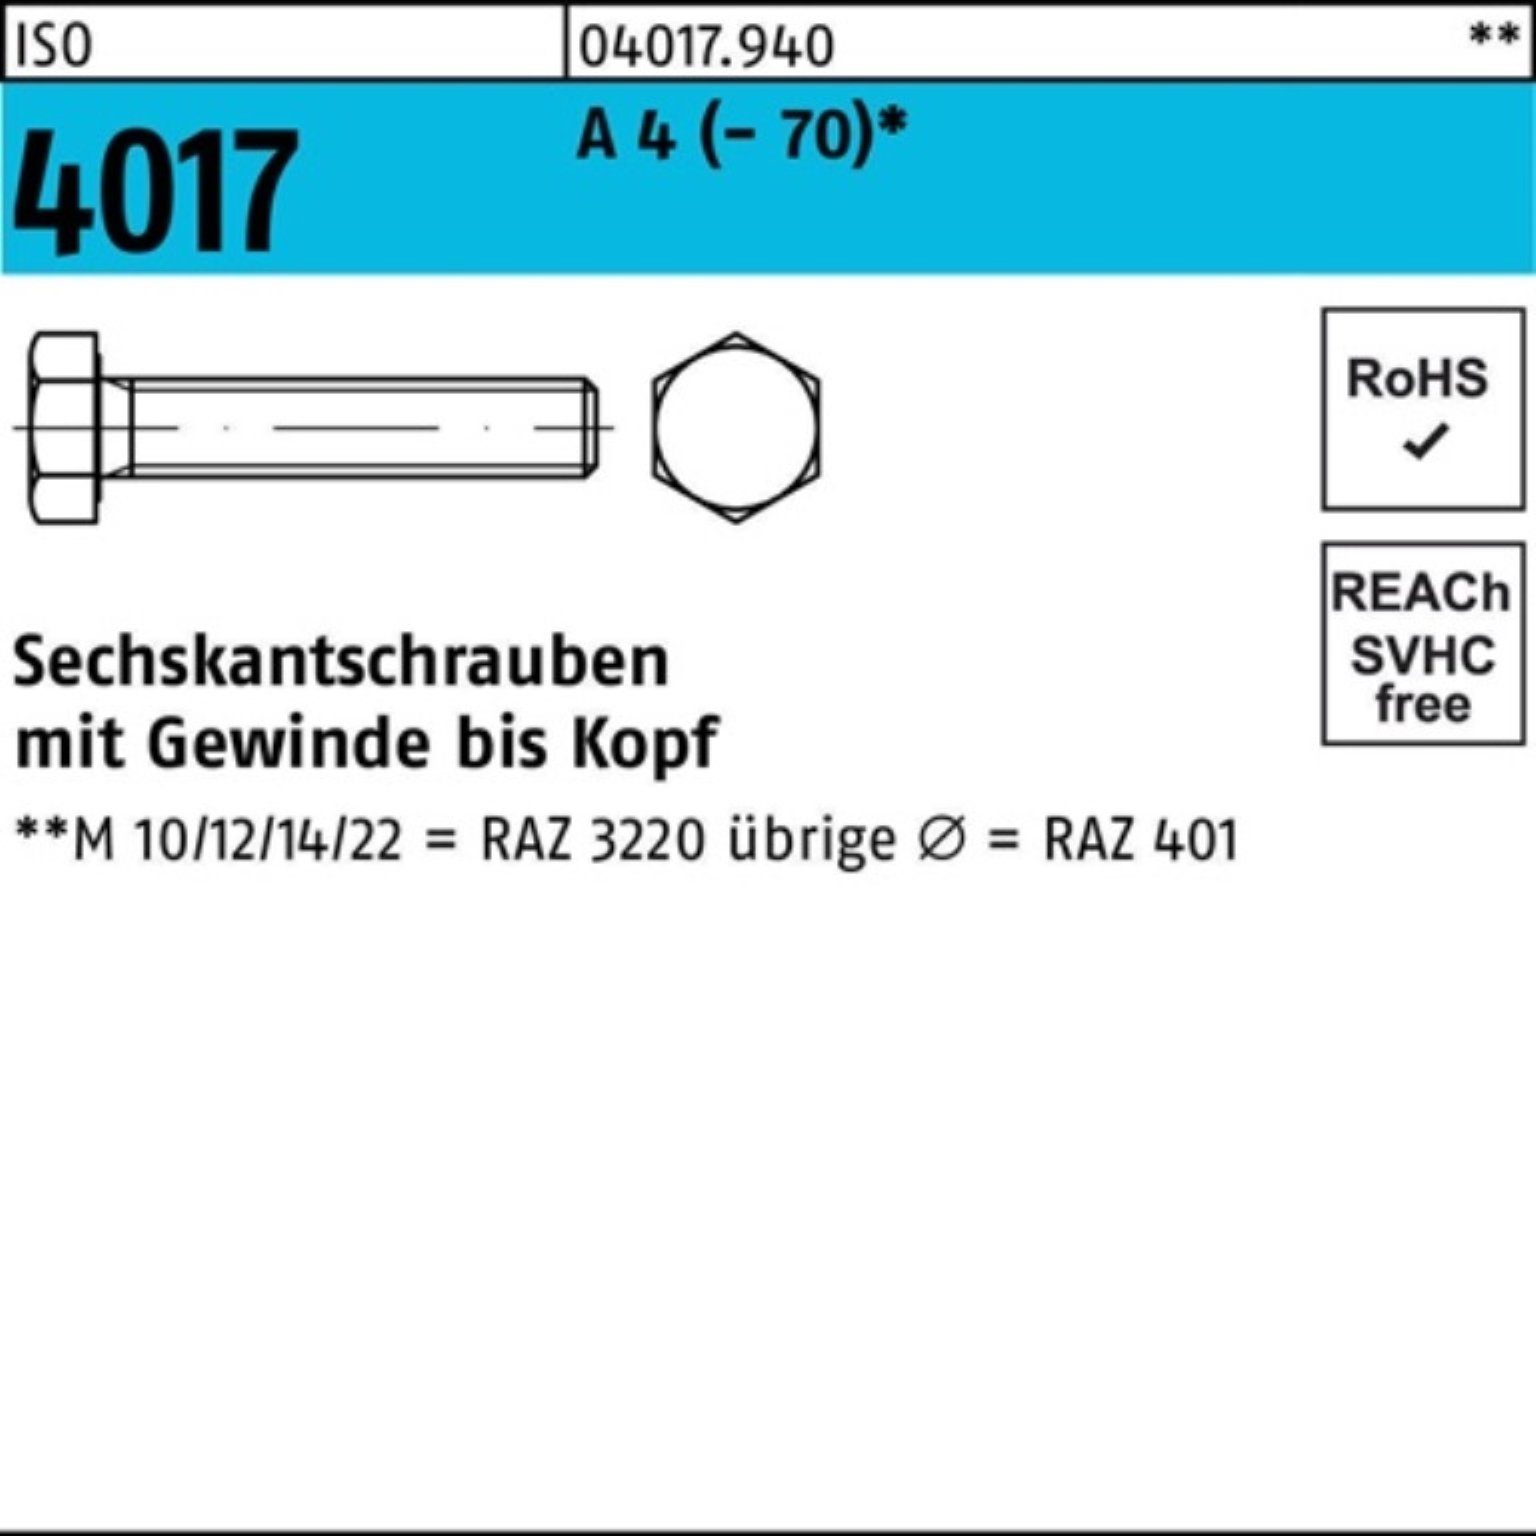 Bufab Sechskantschraube I A VG Sechskantschraube Pack 4017 ISO 50 M6x 80 Stück (70) 100er 4